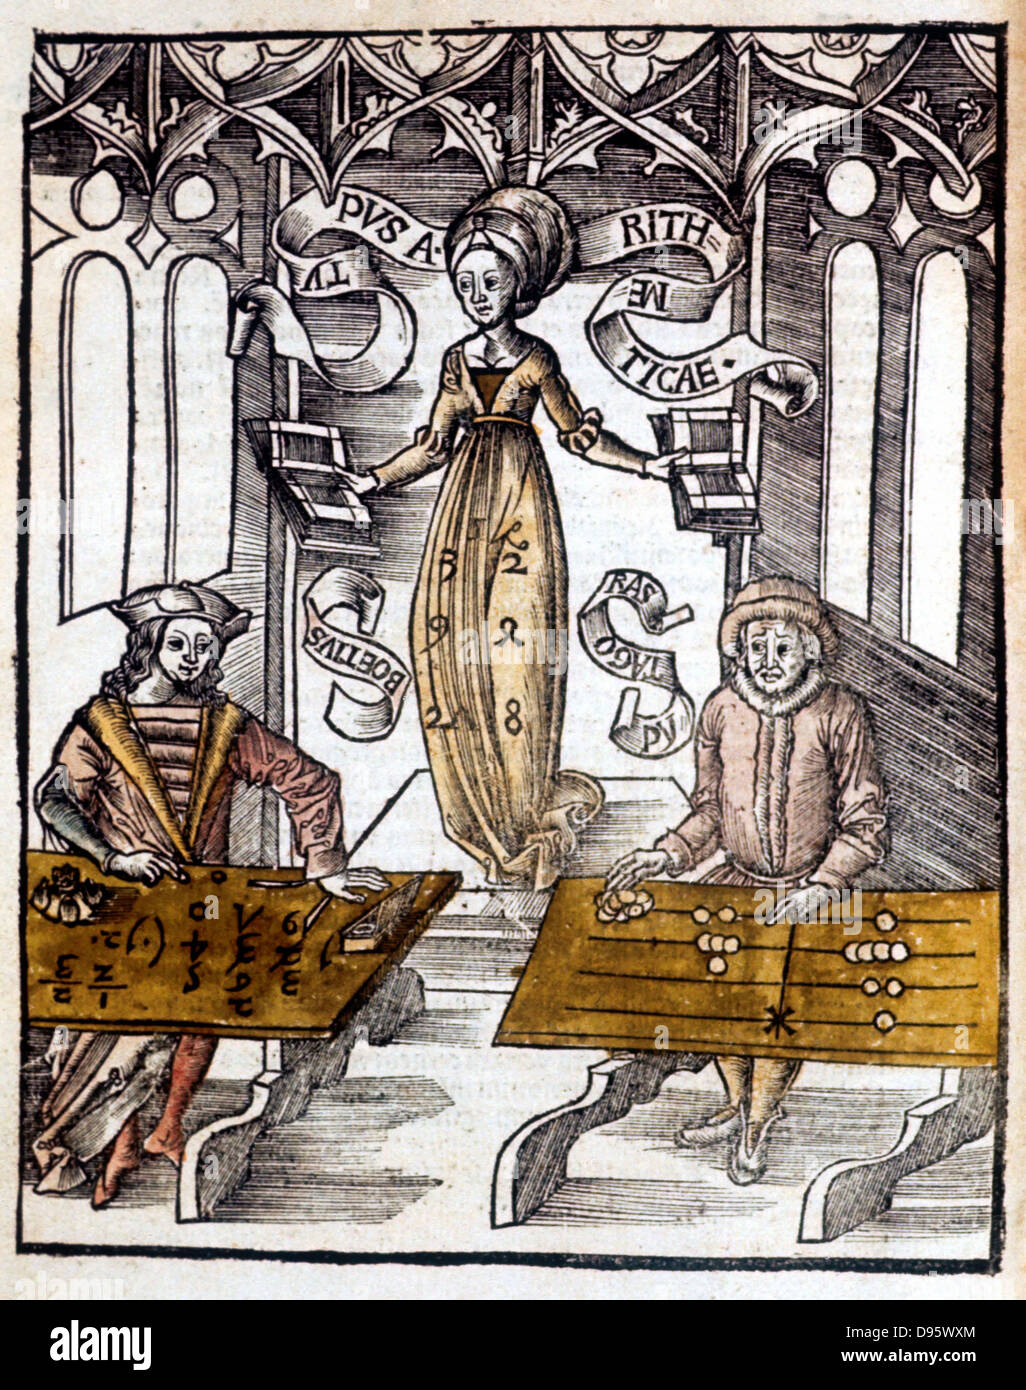 Pythagoras (6. Jahrhundert v. Chr.), rechts, mit zählen Tabelle, konkurriert gegen Boethius (Boece) mit Algorithmen für die Geschwindigkeit bei der Berechnung. Hinter ihnen schwebt die Abbildung der Arithmetik von 'Margarita Philosophica" Basel, 1508. Hand - farbige Holzschnitt. Stockfoto